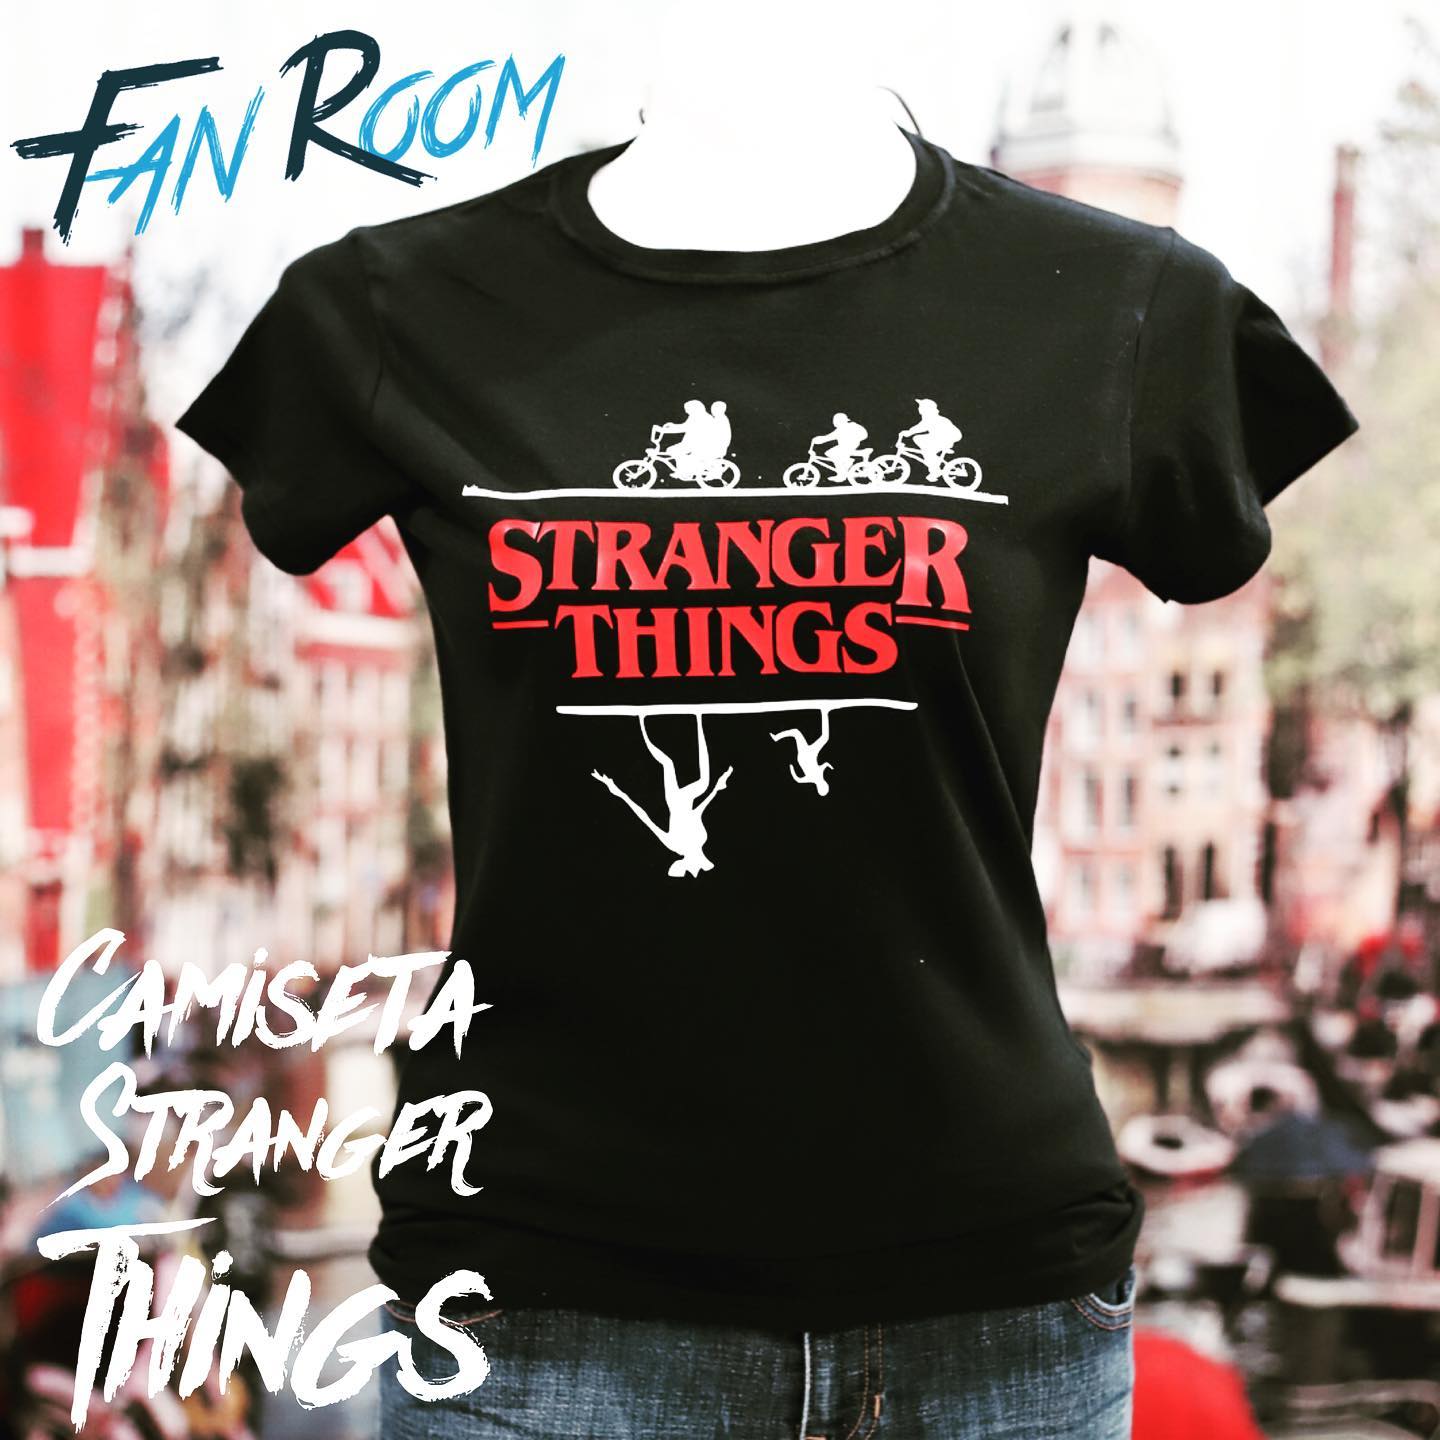 Stranger Things - Urban